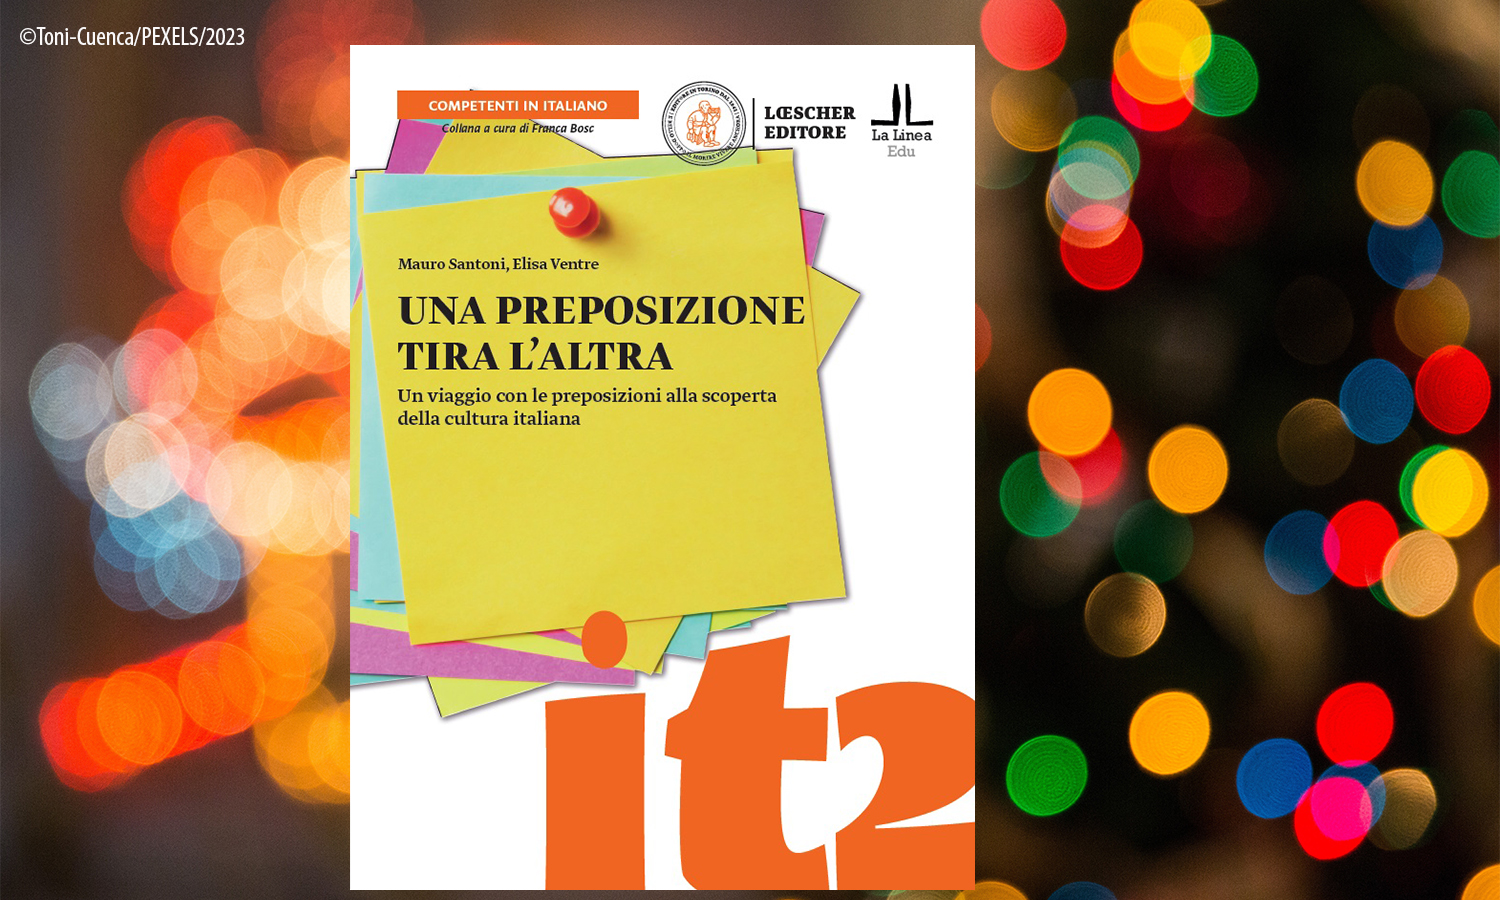 Presentazione del nuovo corso di “UNA PREPOSIZIONE TIRA L'ALTRA”, di M. Santoni, E.Ventre